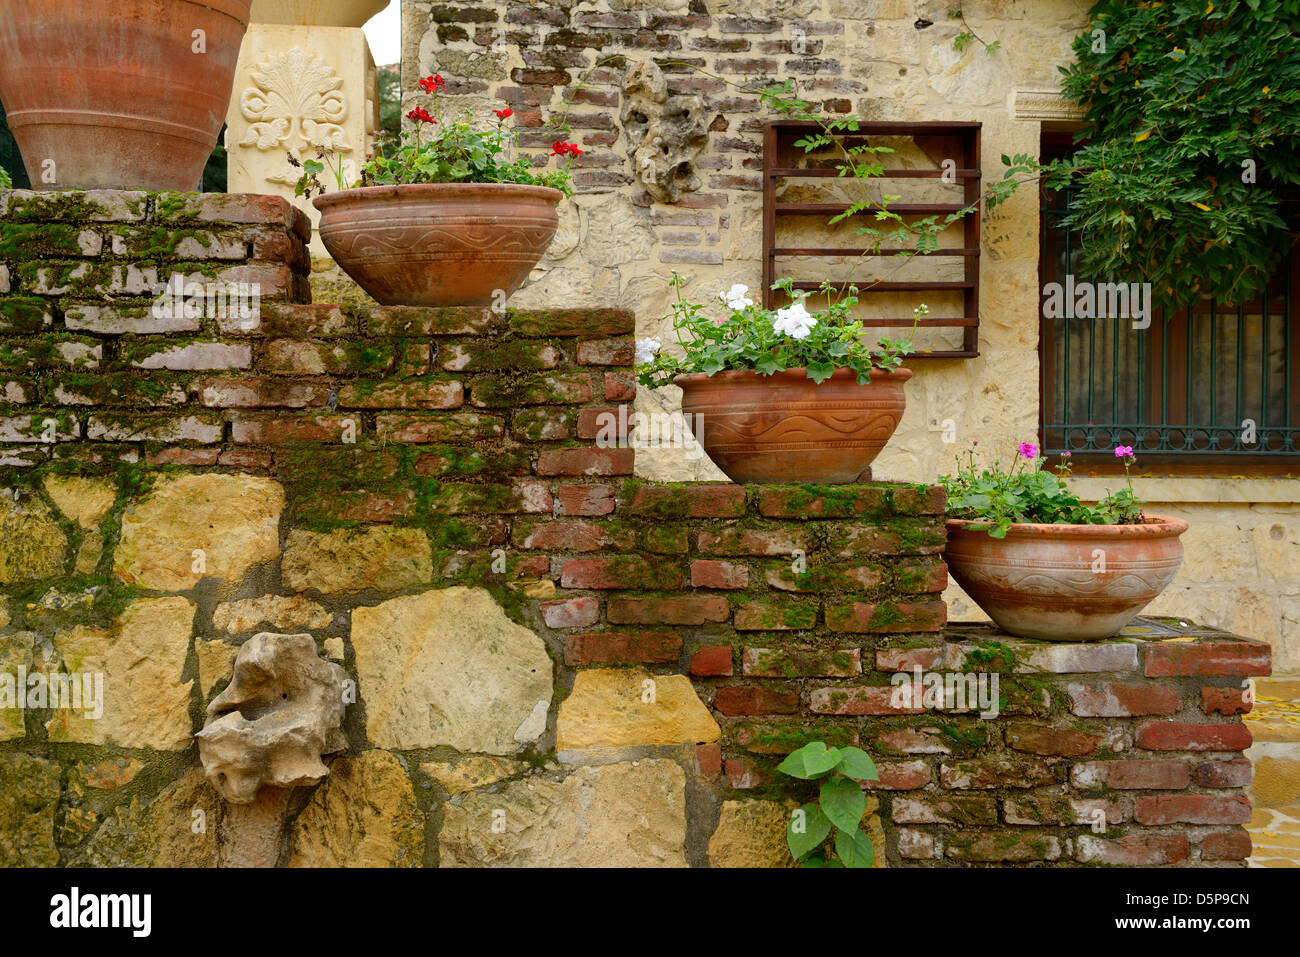 https://c8.alamy.com/comp/D5P9CN/terracotta-flowerpots-on-an-outdoor-staircase-wall-in-rustic-hillside-D5P9CN.jpg